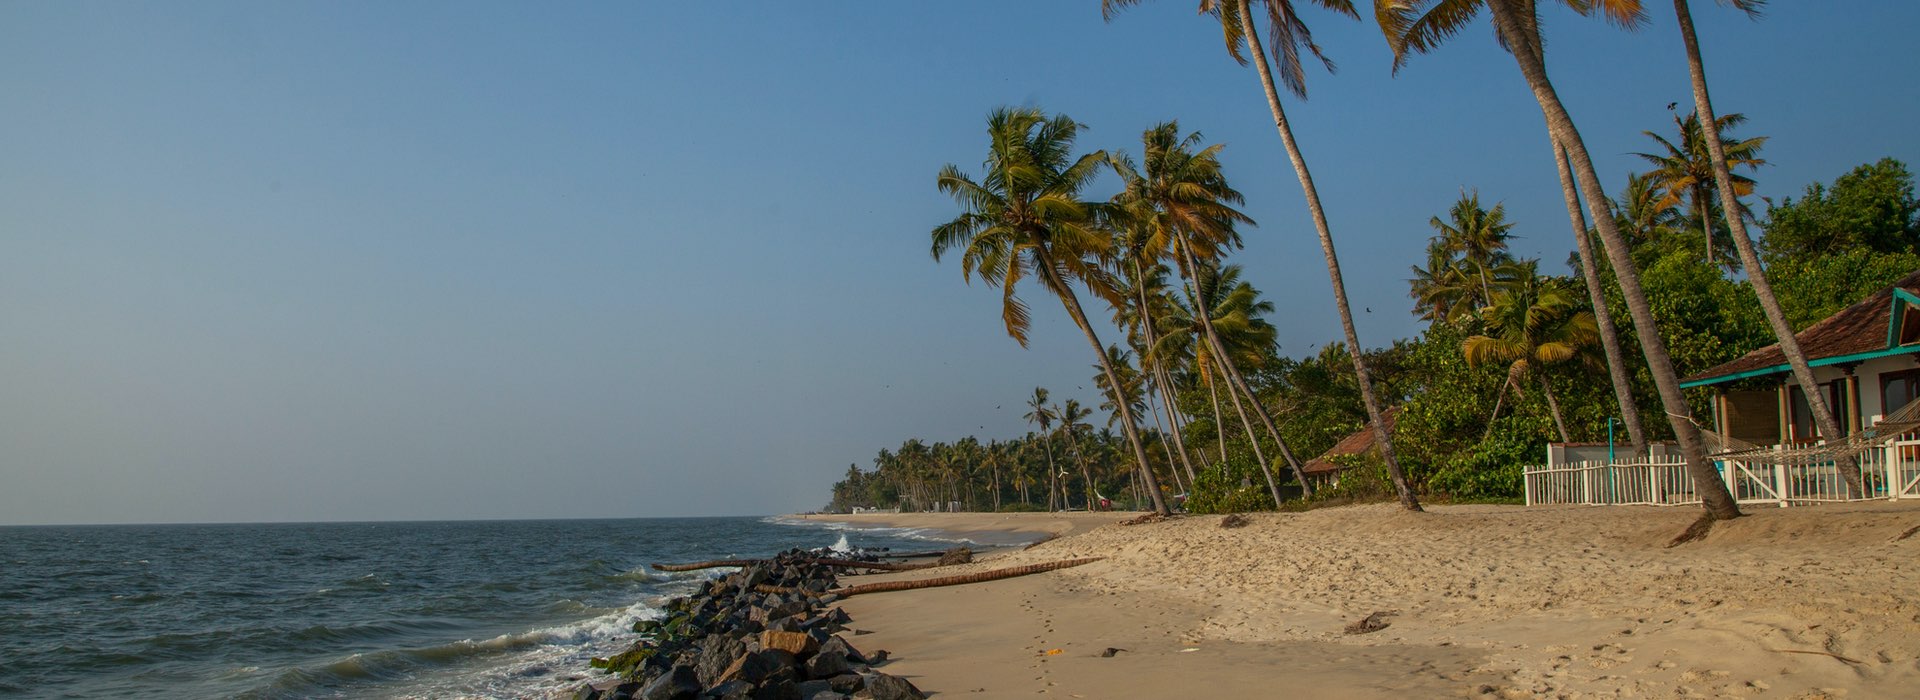 Marari Beach - Allappuzha - Kerala - India